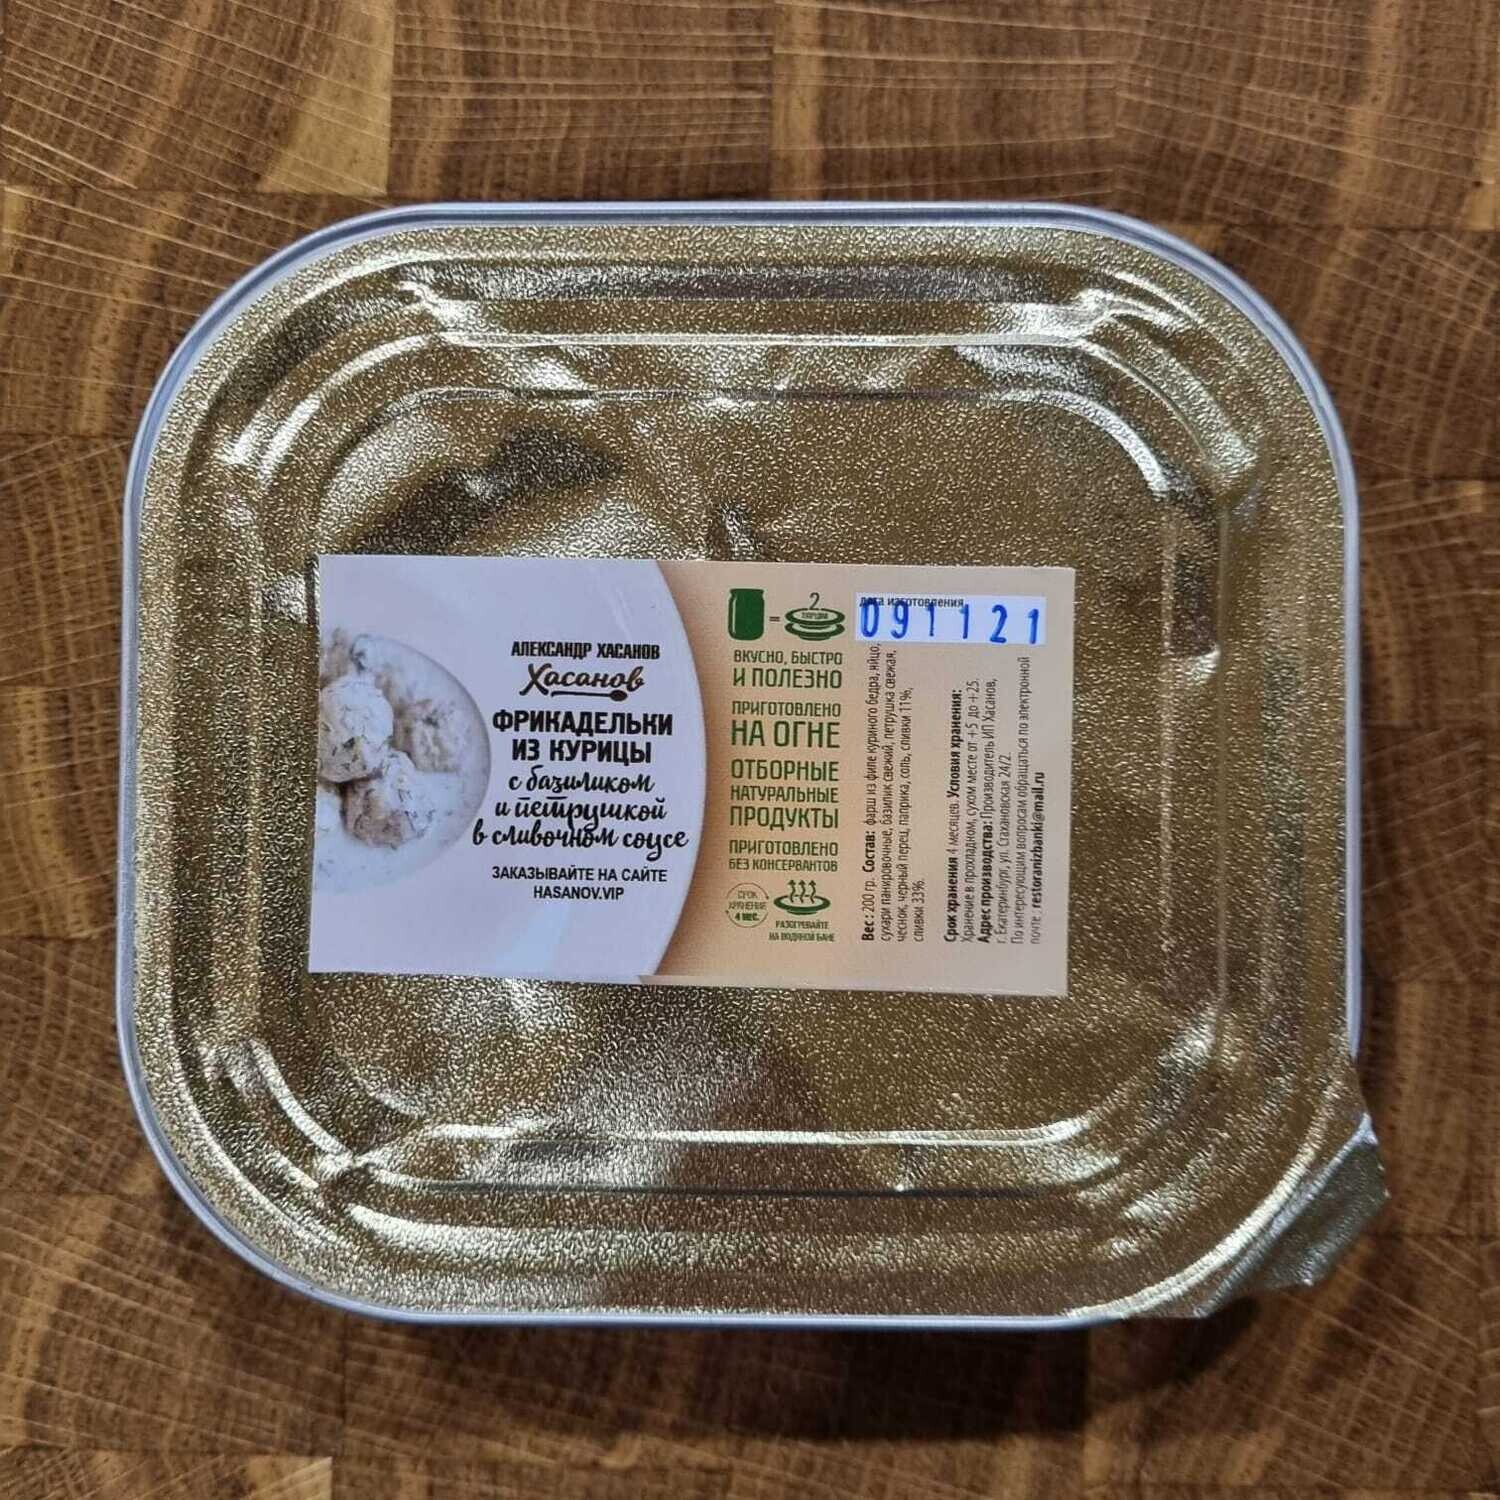 Фрикадельки из курицы с базиликом и петрушкой в сливочном соусе(ламистерная упаковка)